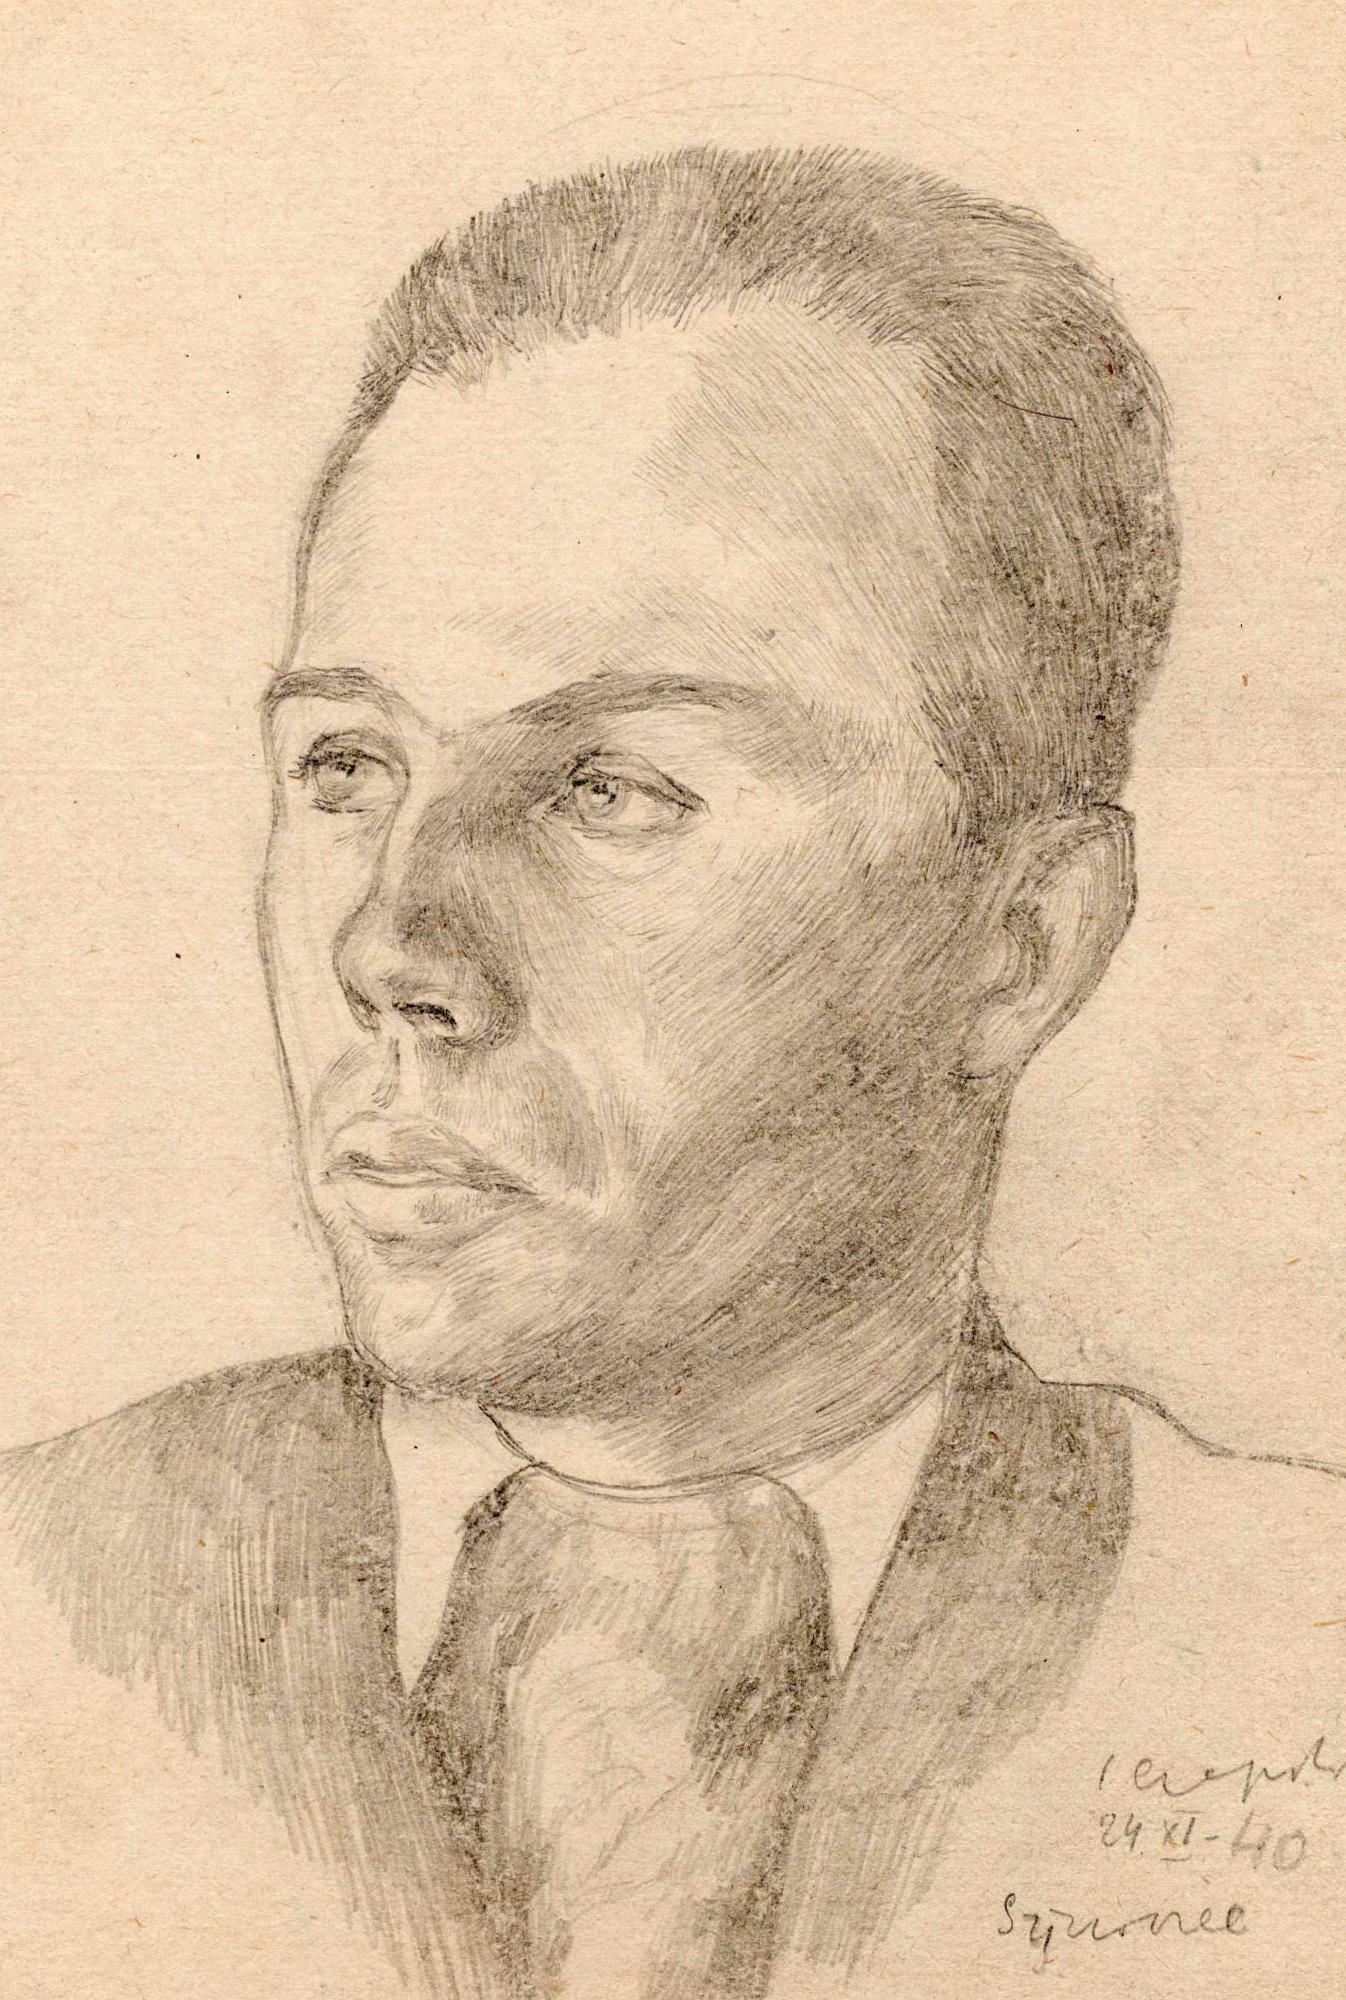 Portret przedstawiający Aleksandra Witliba wykonany przez Józefa Czapskiego w obozie w Griazowcu. Ołówek na papierze, 24 listopada 1940